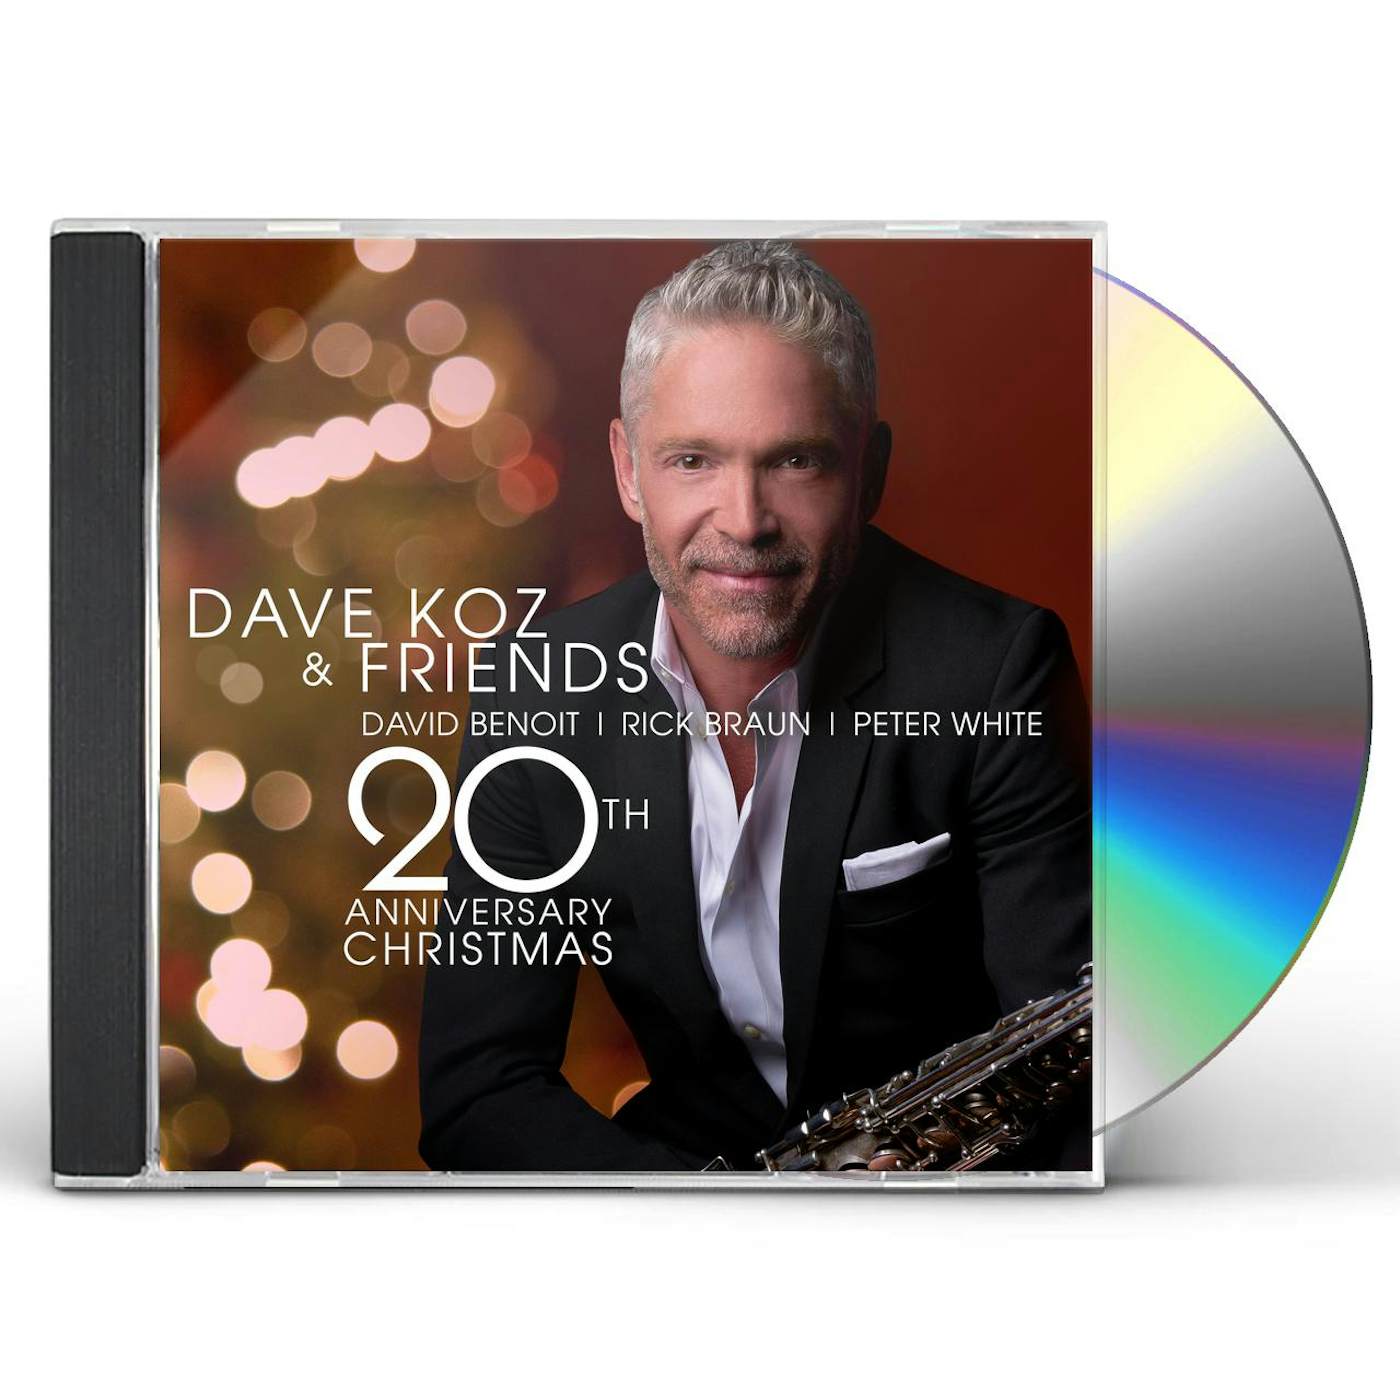 DAVE KOZ & FRIENDS 20TH ANNIVERSARY CHRISTMAS CD